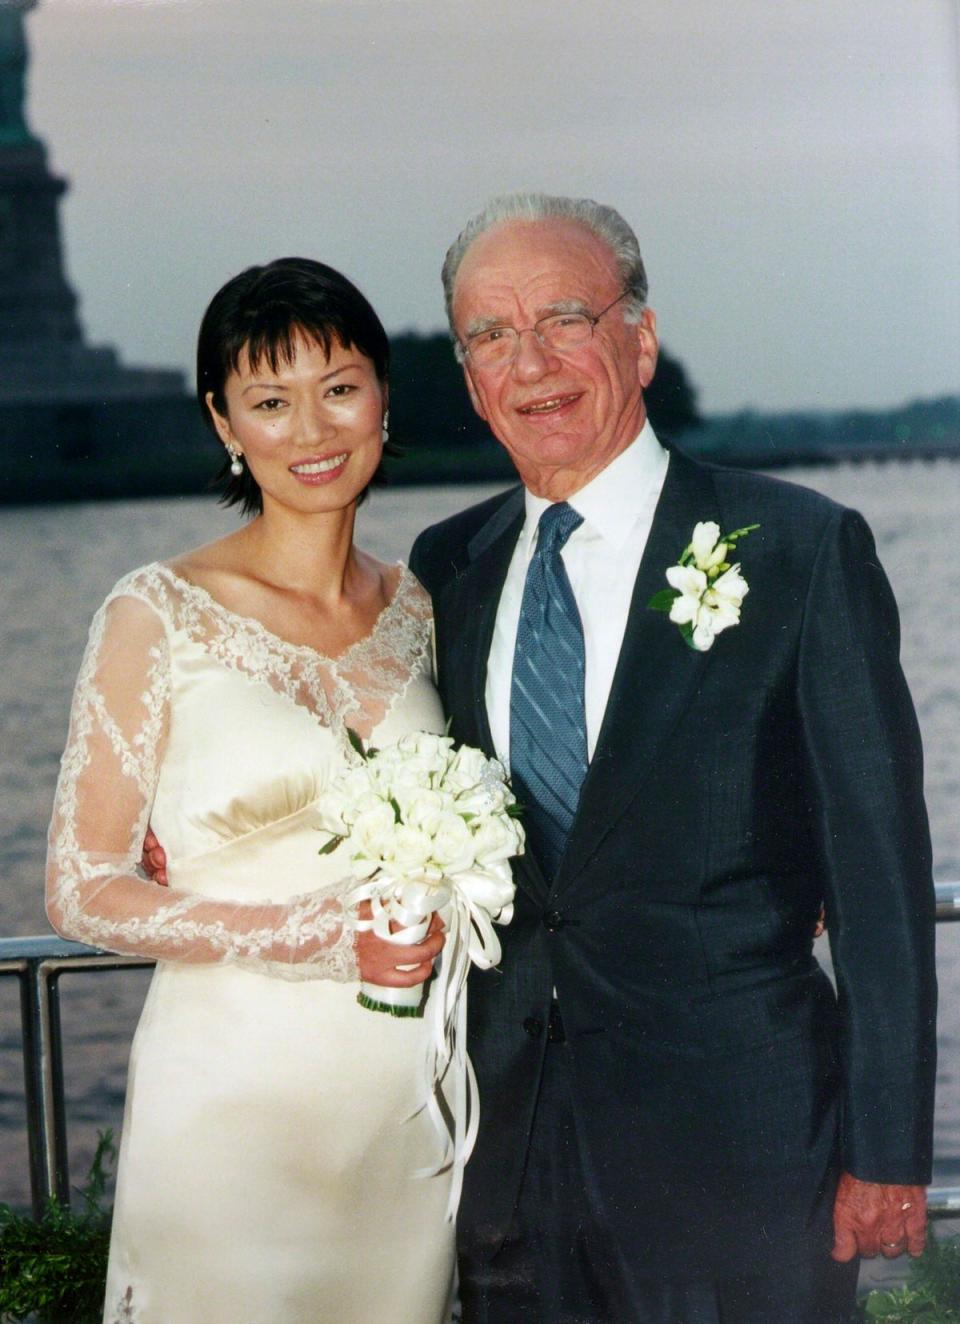 Rupert Murdoch and Wendi Deng at their wedding (Reuters)